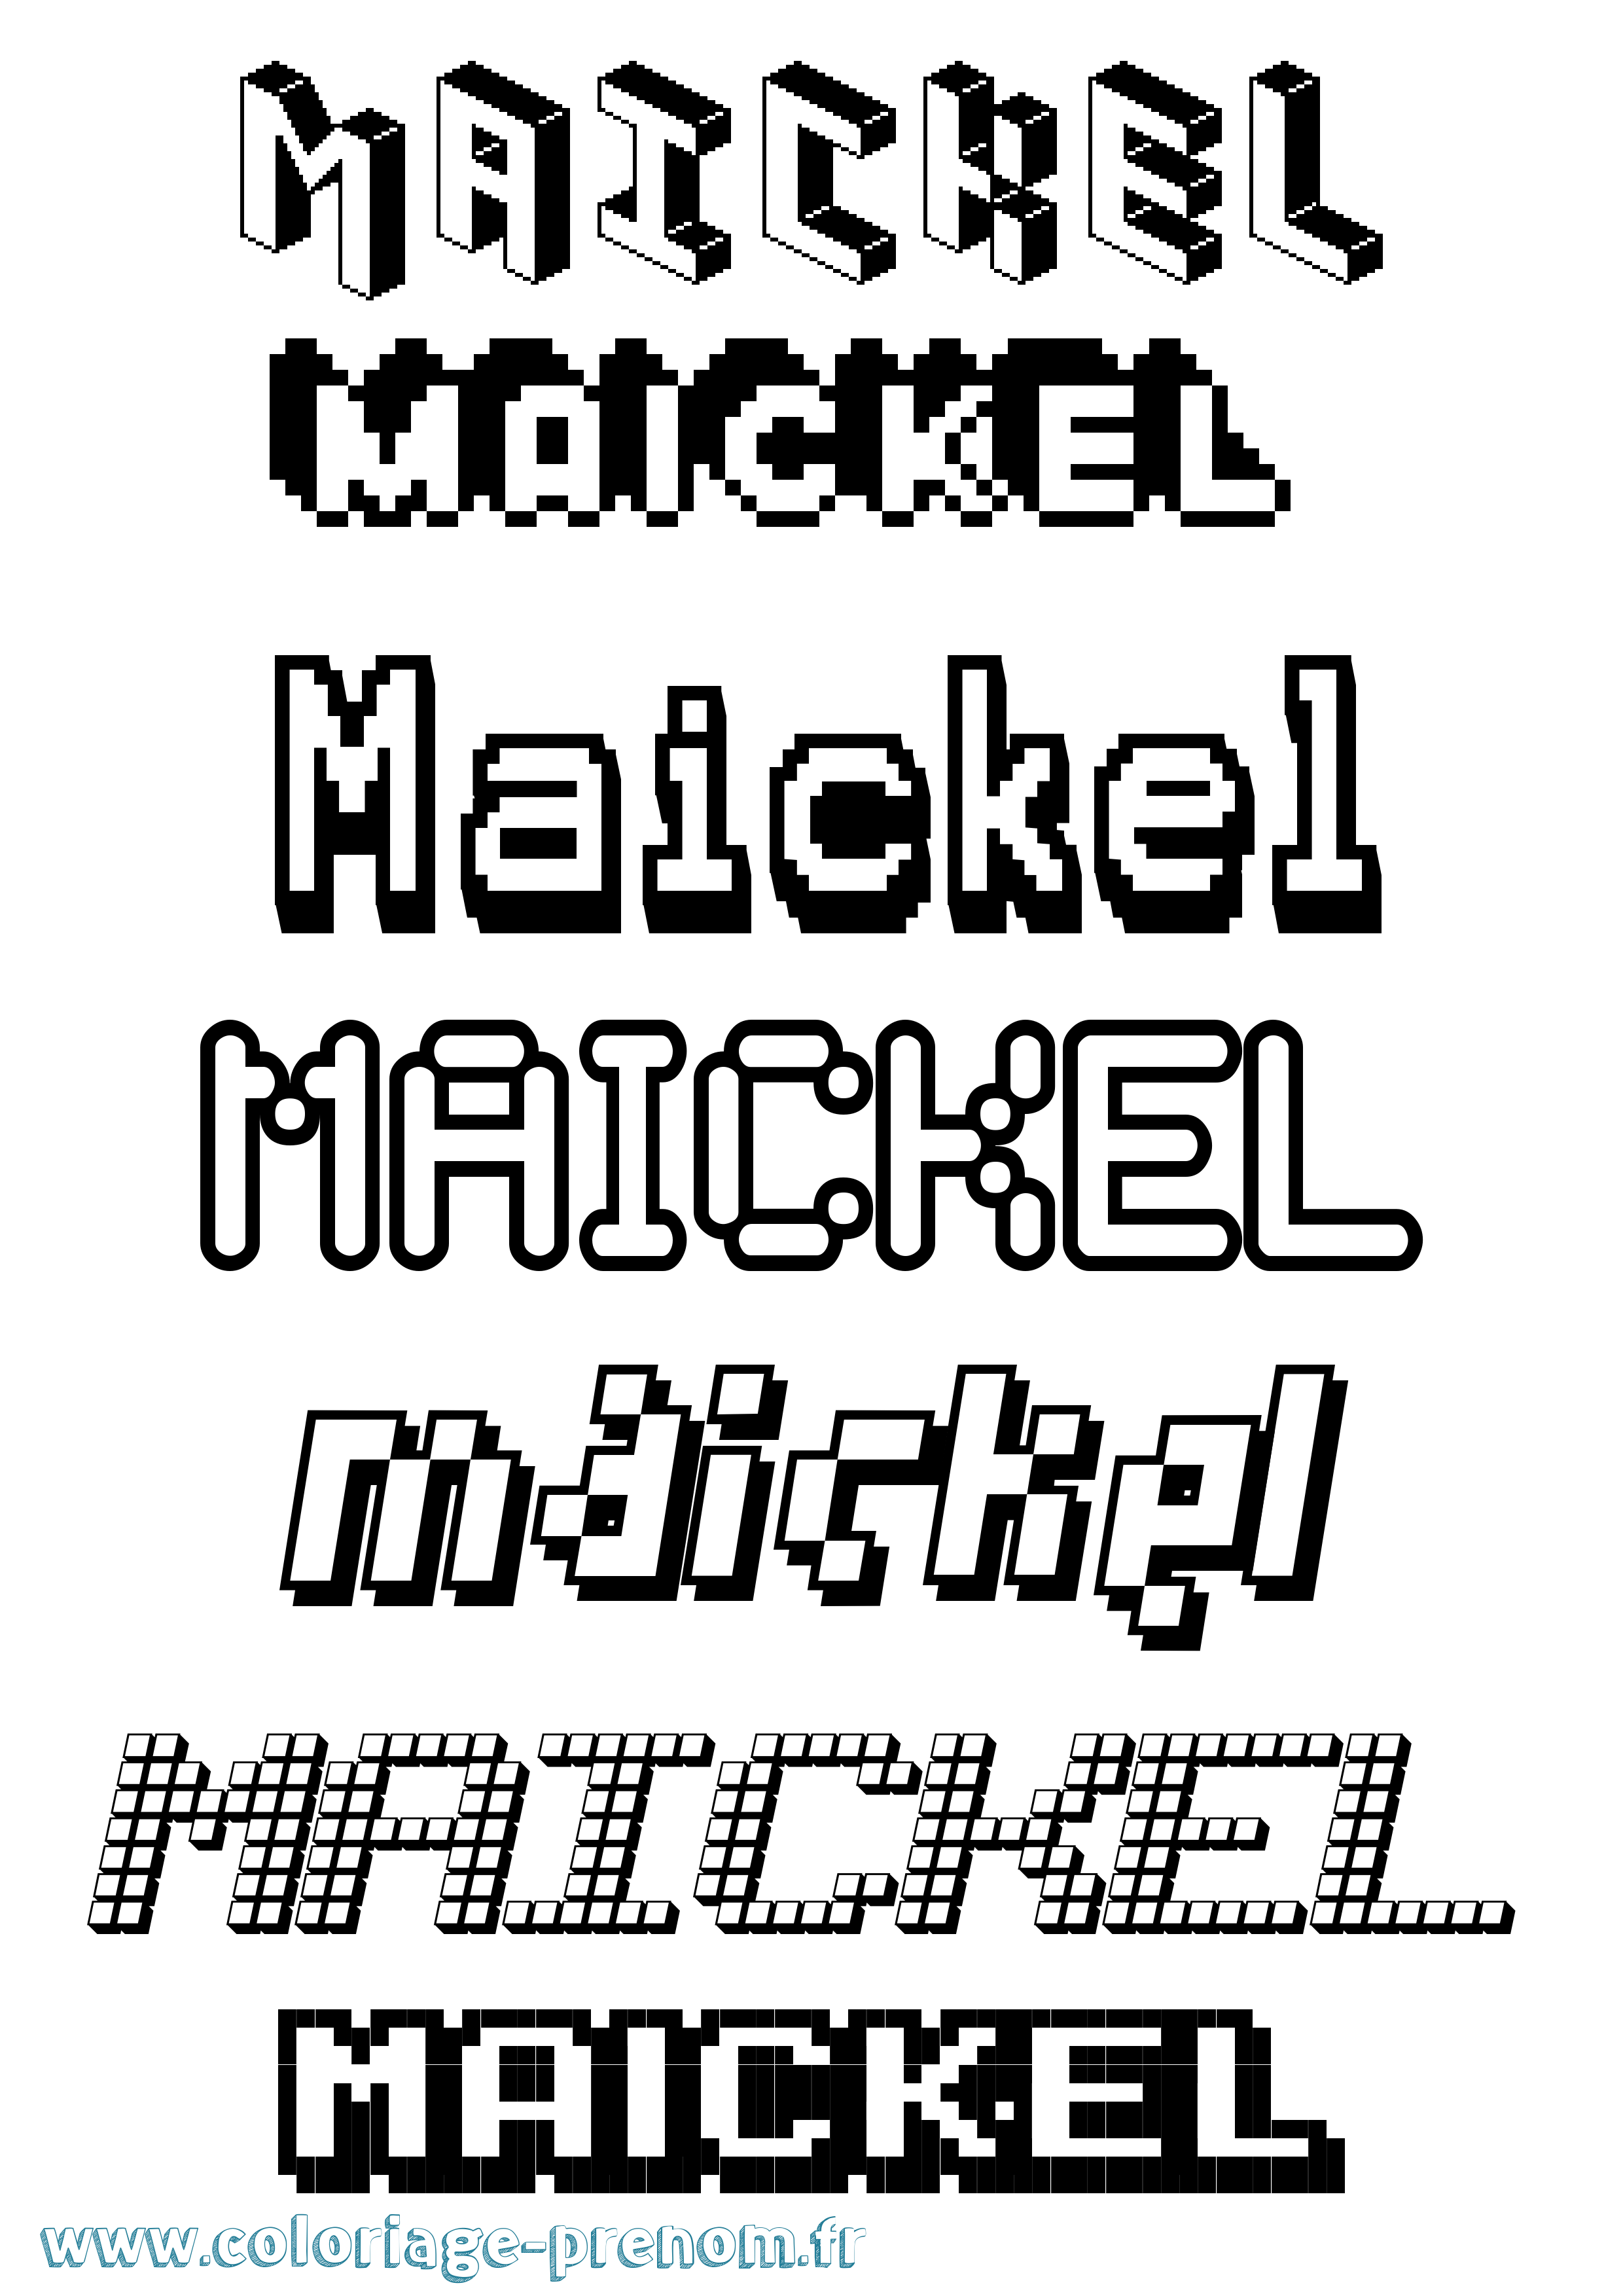 Coloriage prénom Maickel Pixel